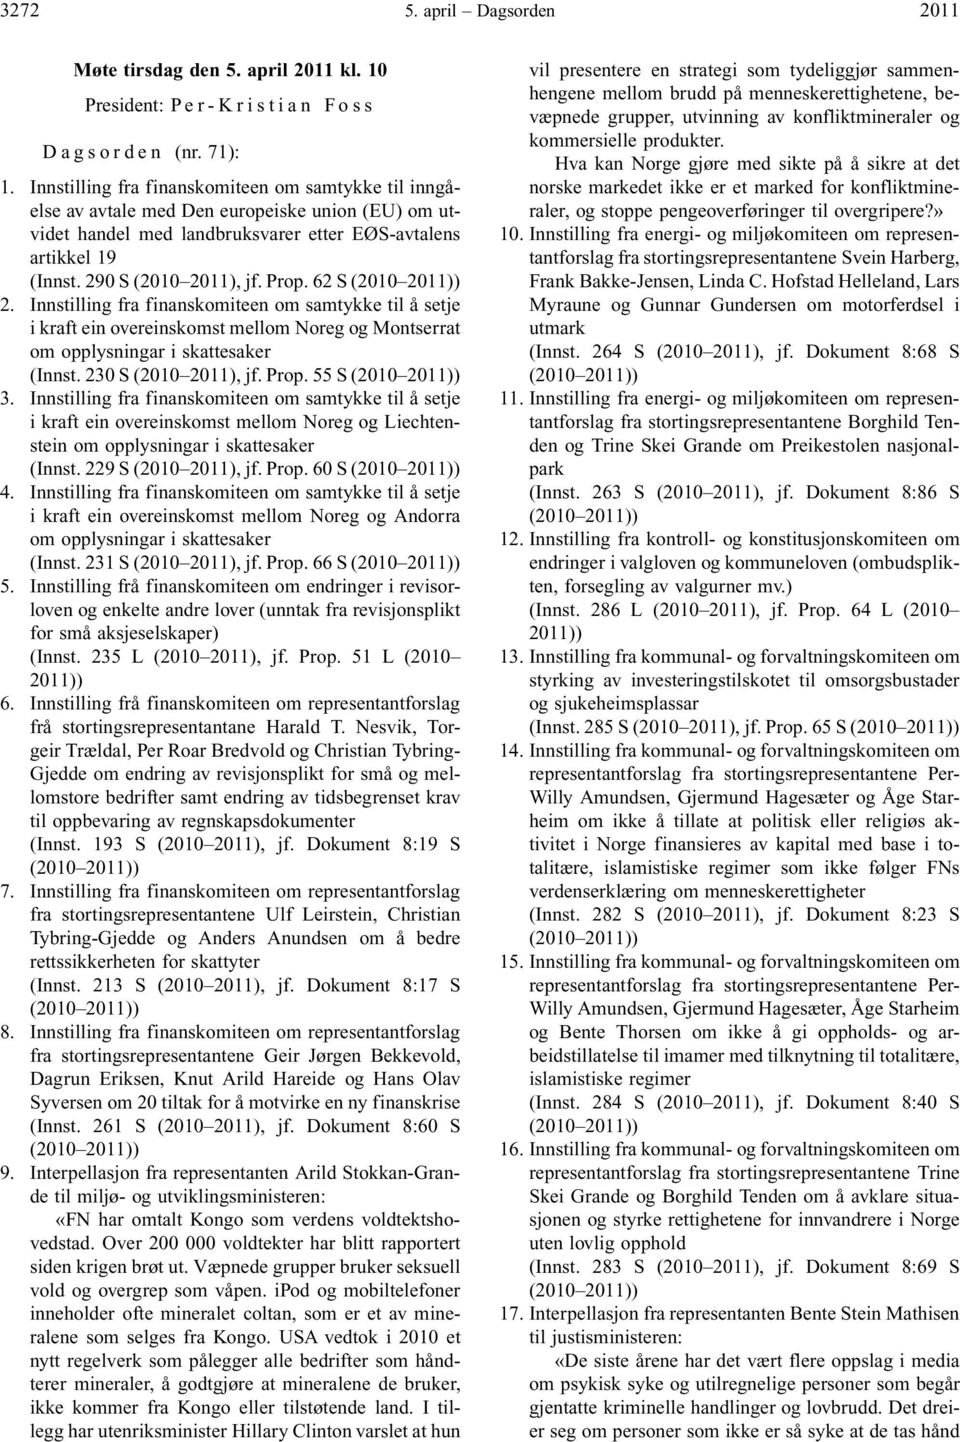 Prop. 62 S (2010 2011)) 2. Innstilling fra finanskomiteen om samtykke til å setje i kraft ein overeinskomst mellom Noreg og Montserrat om opplysningar i skattesaker (Innst. 230 S (2010 2011), jf.